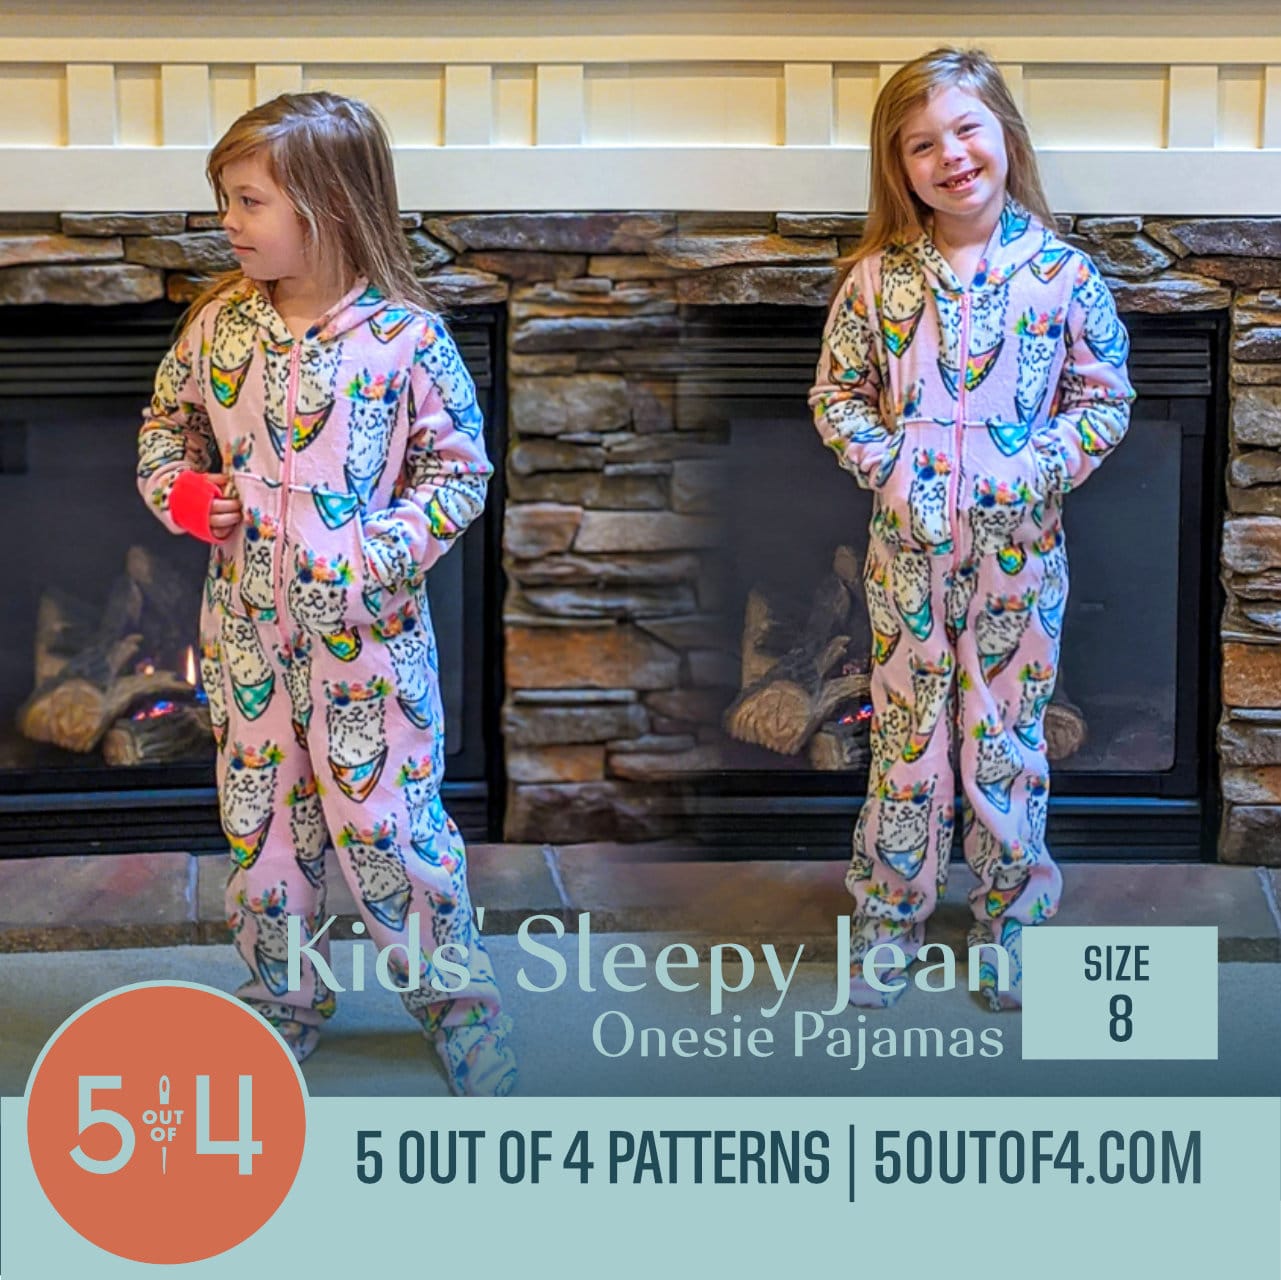 temperament uitdrukking lied Kids' Sleepy Jean Onesie Pajamas - 5 out of 4 Patterns